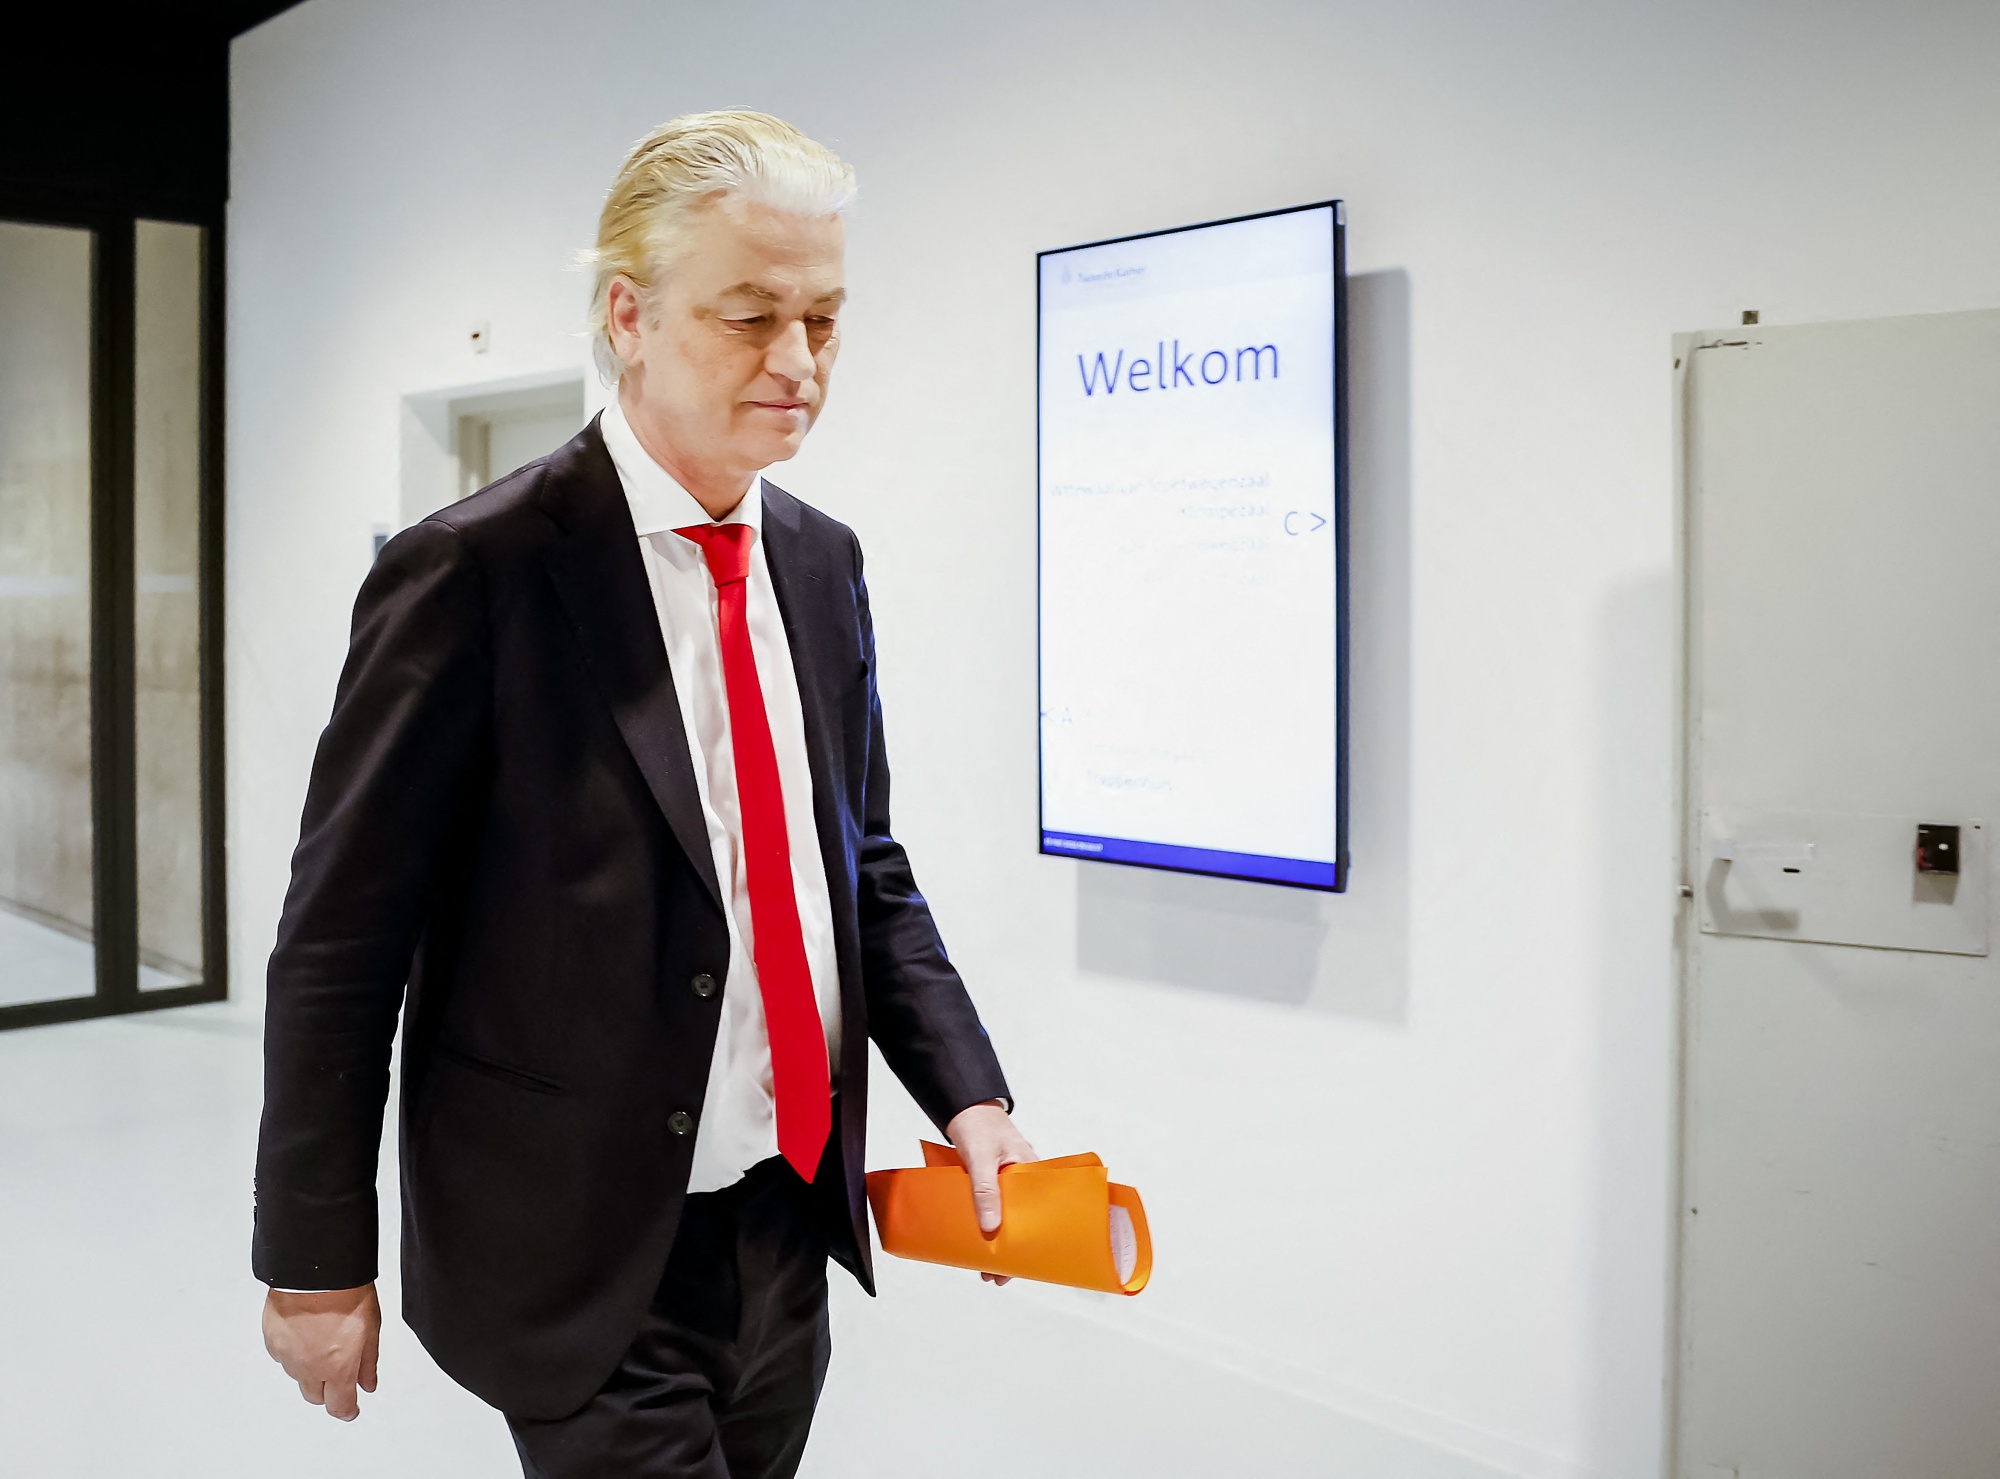 Geert Wilders in The Hague on May 16.